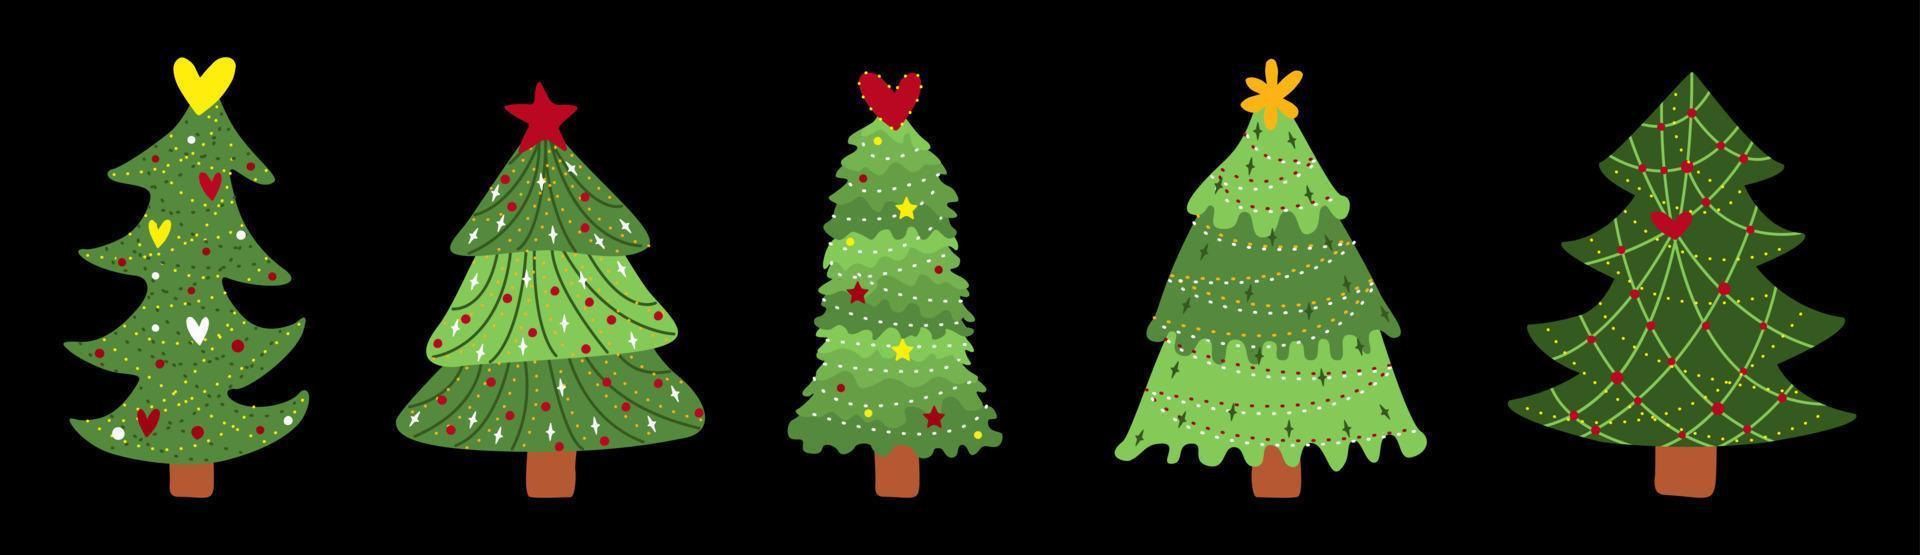 árbol de Navidad. símbolo del año nuevo. conjunto de pinos con decoración, guirnaldas, luces y estrellas. ilustración vectorial aislado. vector